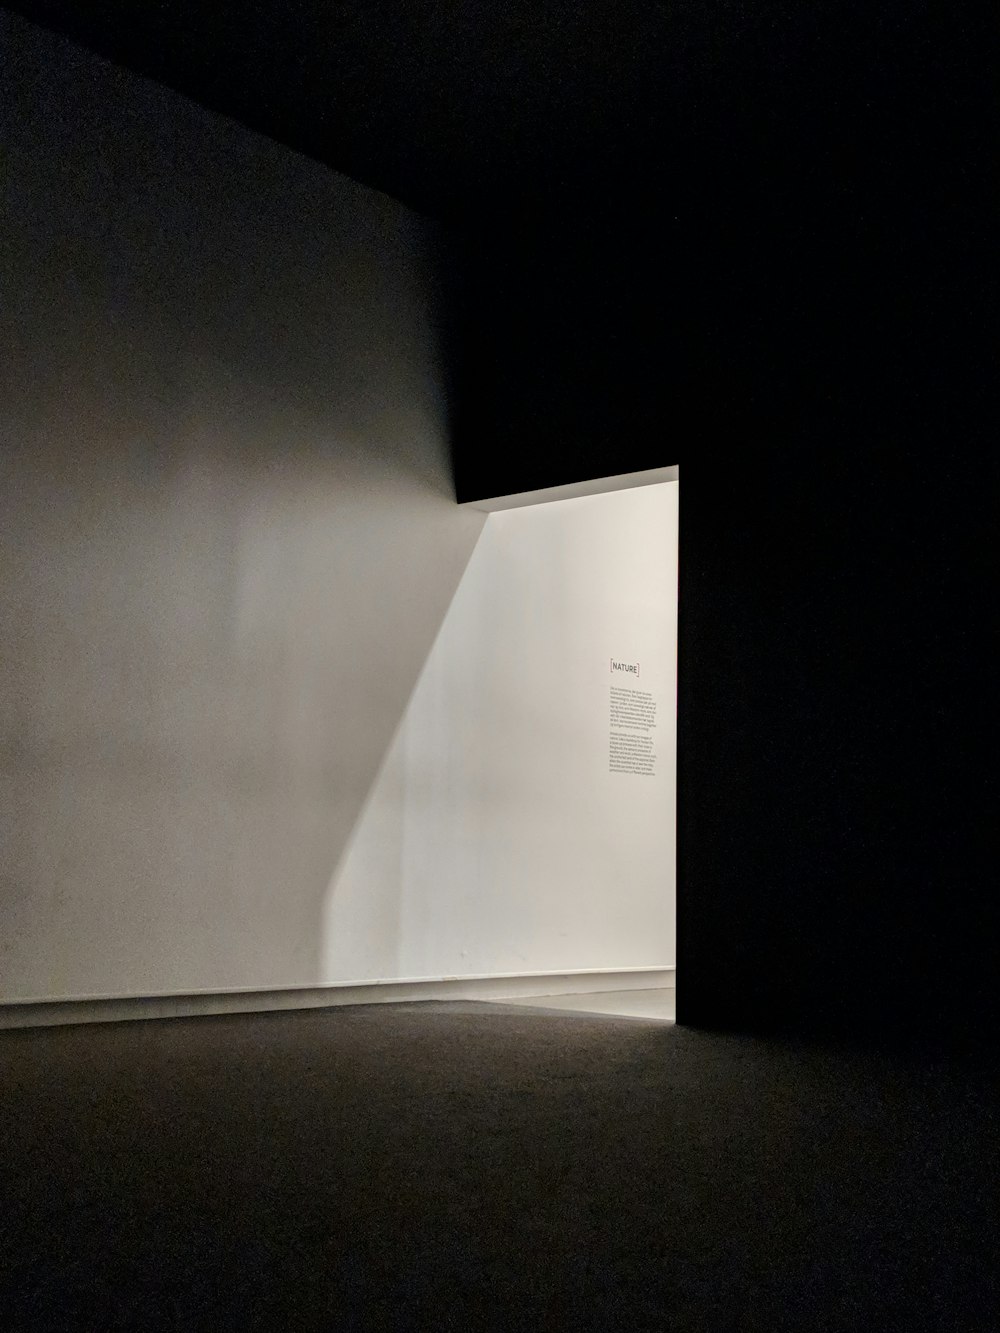 Una stanza vuota con una luce che entra attraverso il muro